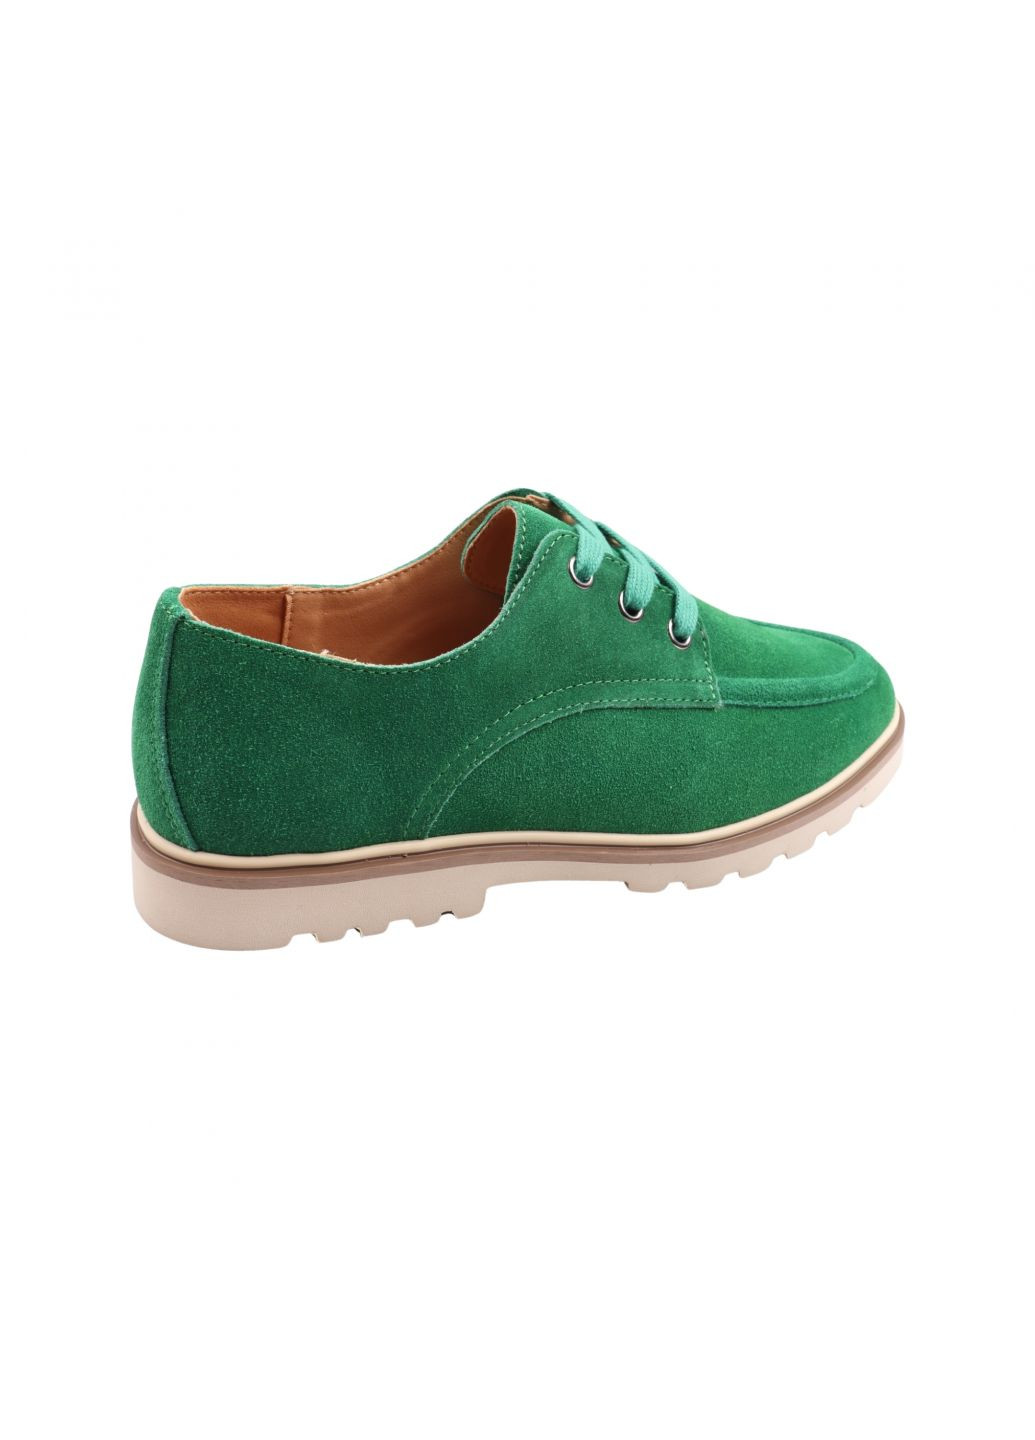 Туфли женские зеленые натуральная замша Gifanni